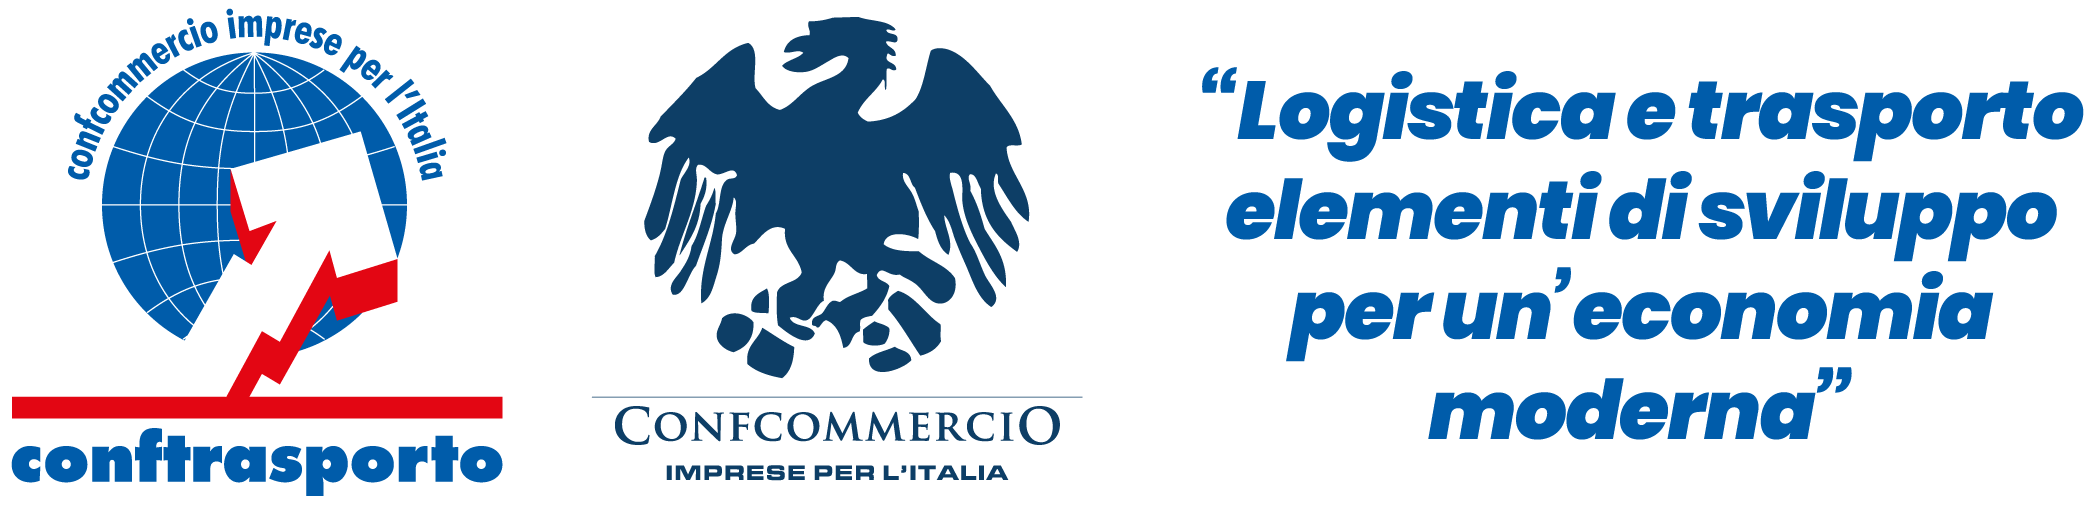 Il Presidente Confcommercio, Carlo Sangalli, sui temi del trasporto